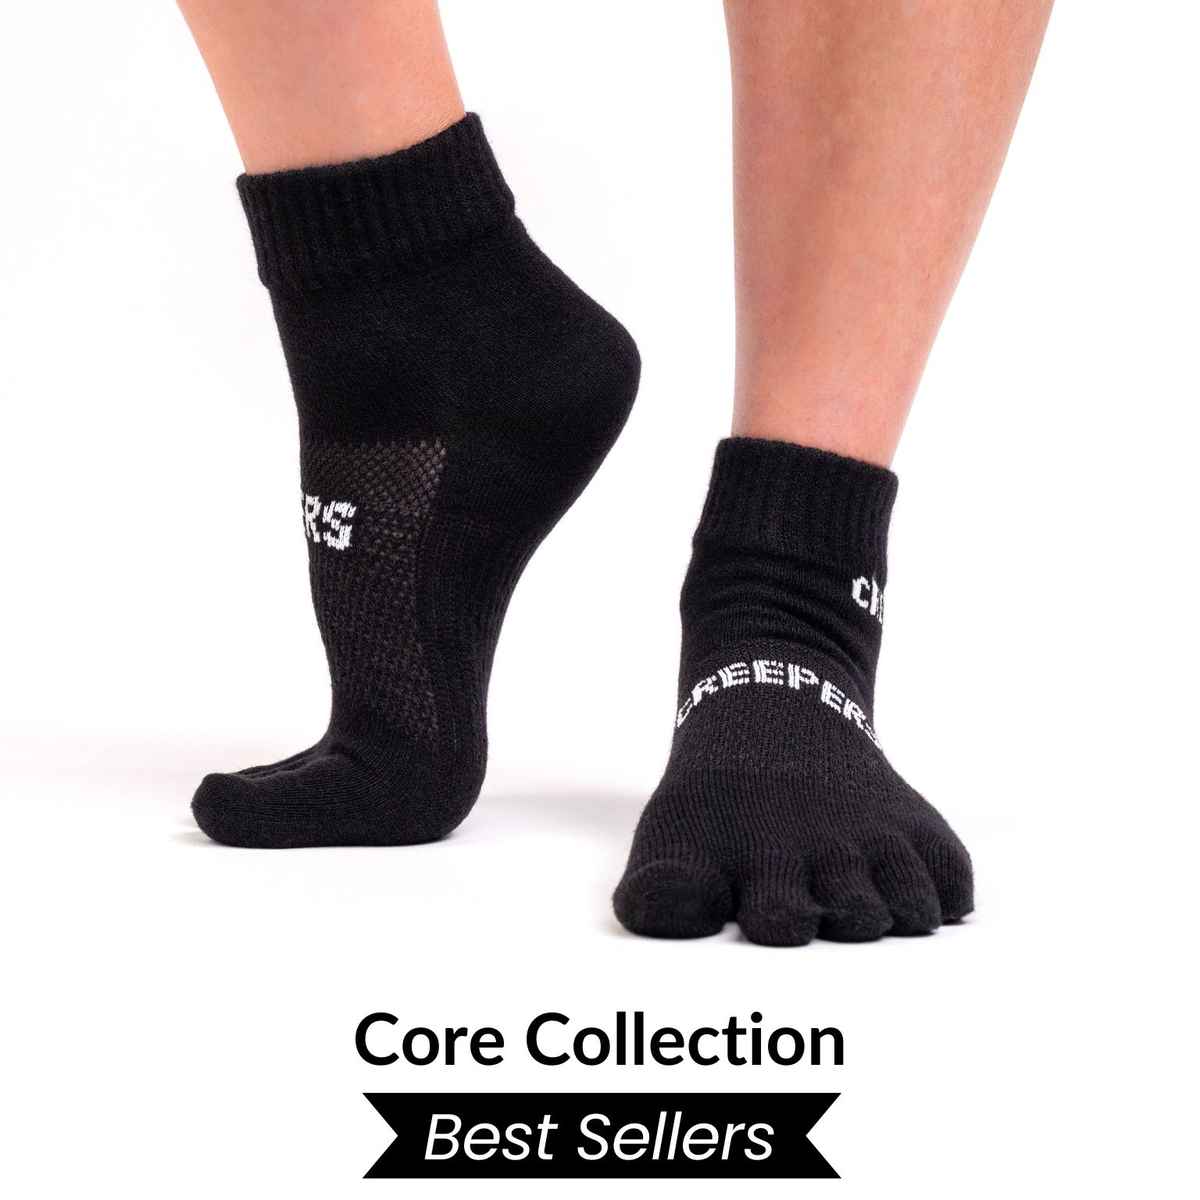 Men's Merino Hike Liner Crew Socks